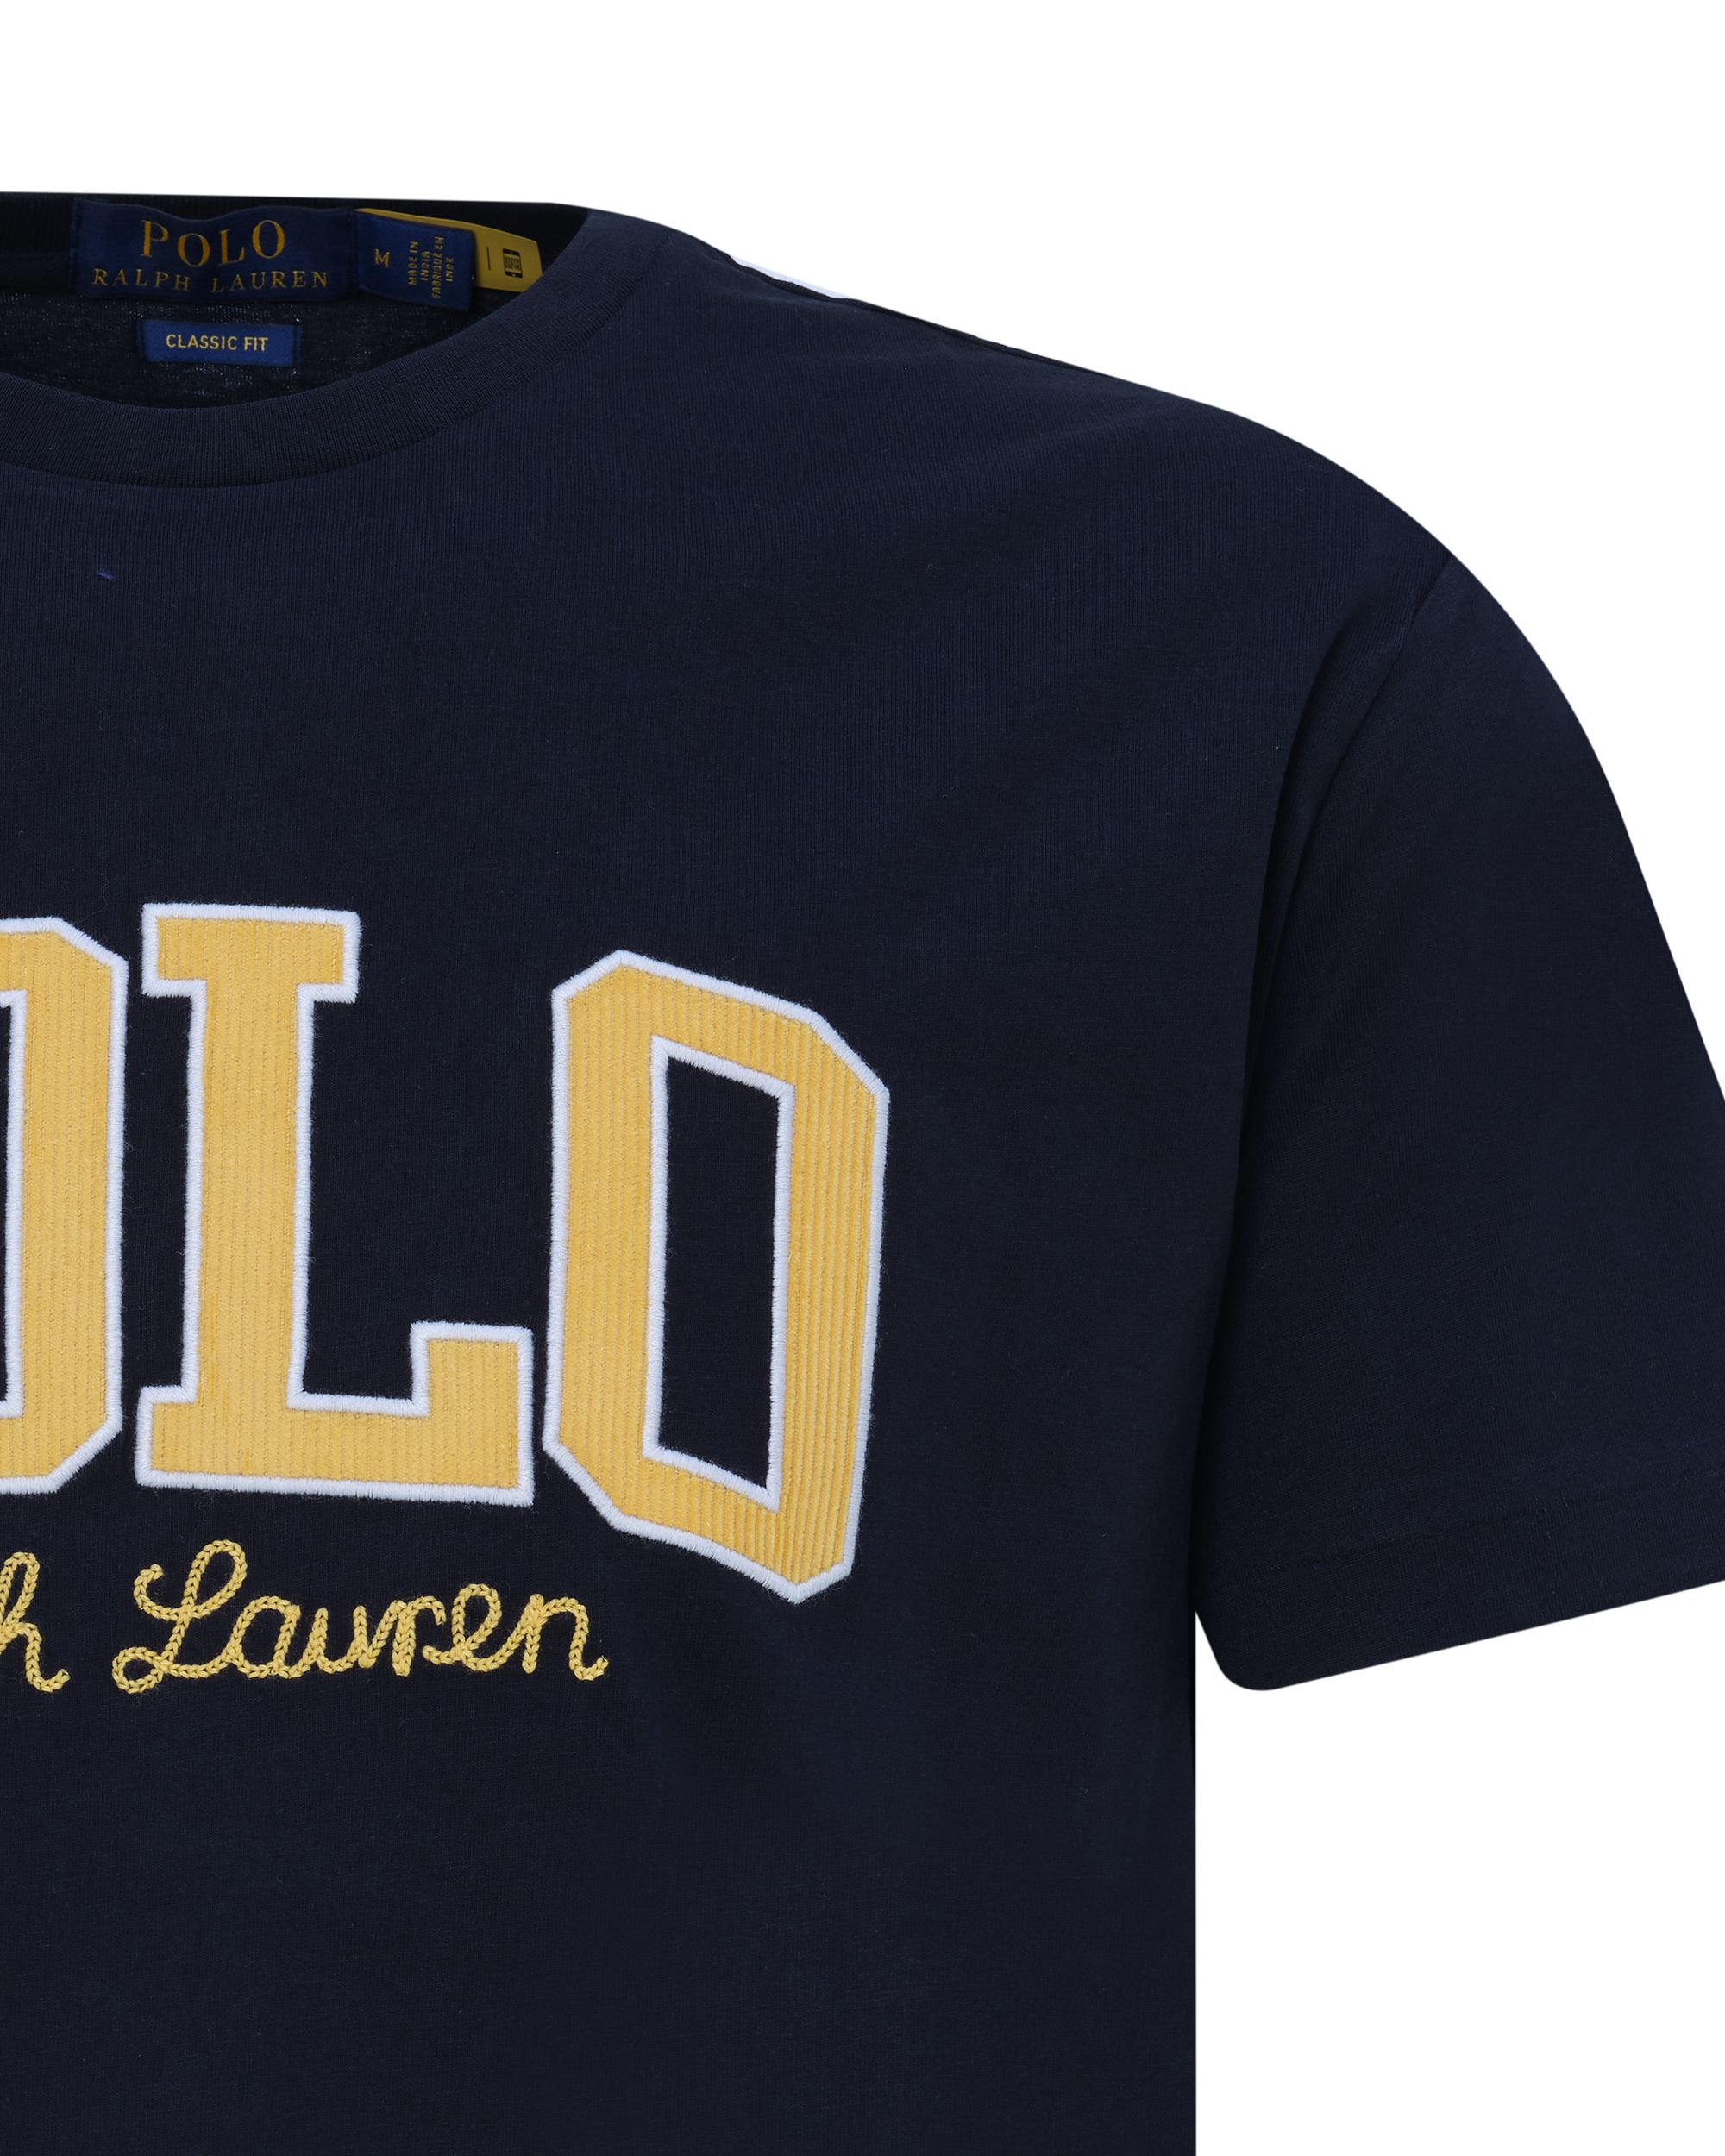 Polo Ralph Lauren T-shirt KM Zwart 080616-001-L